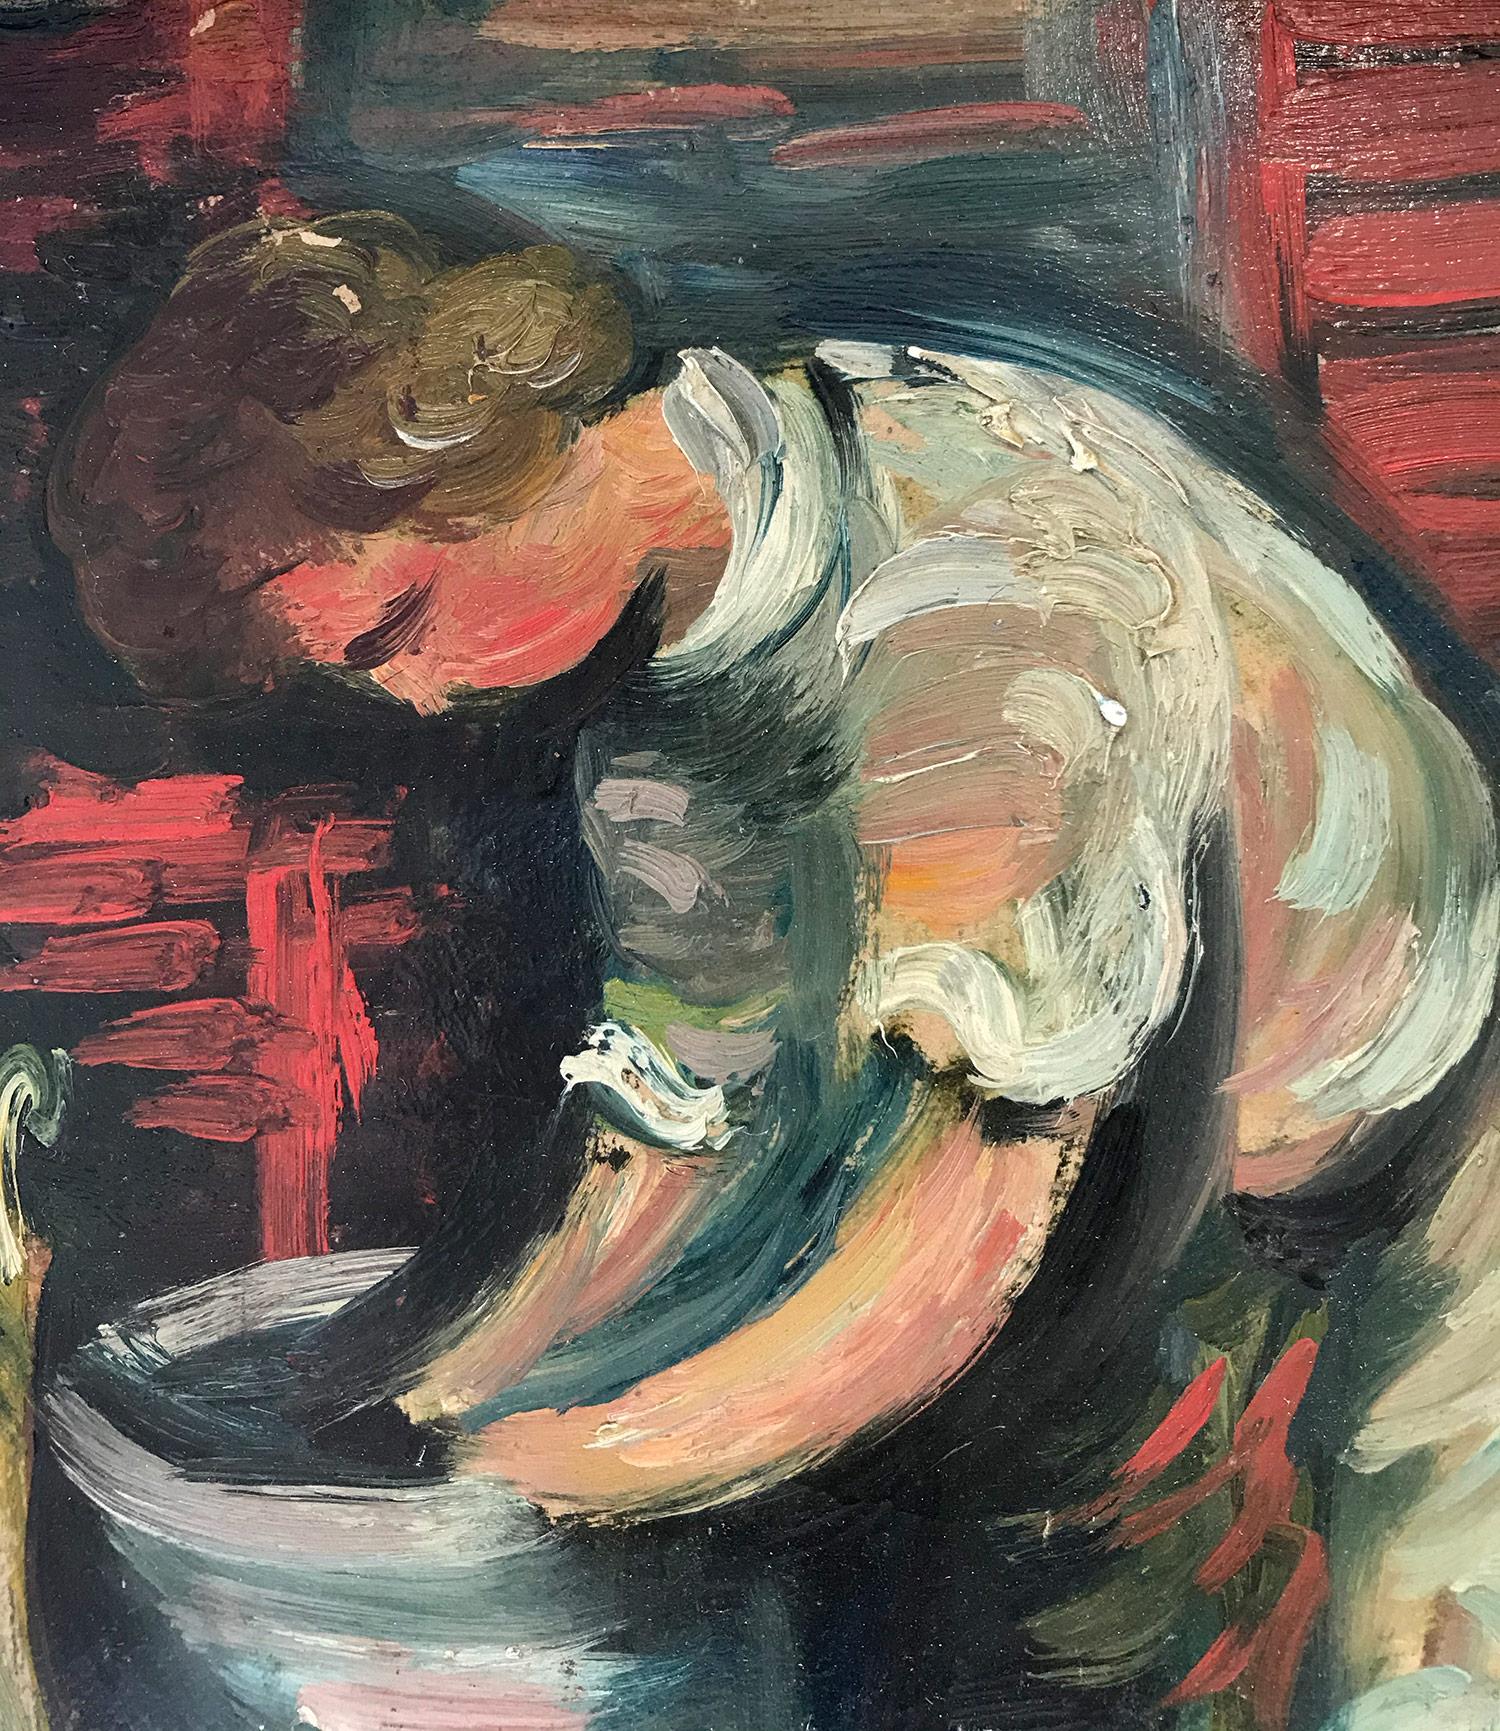 Cette peinture représente un portrait fantaisiste d'une jeune femme lavant son linge devant une maison. Cette pièce a probablement été exécutée dans les années 1930, car les couleurs sont plus sombres que celles des œuvres ultérieures de Zucker.